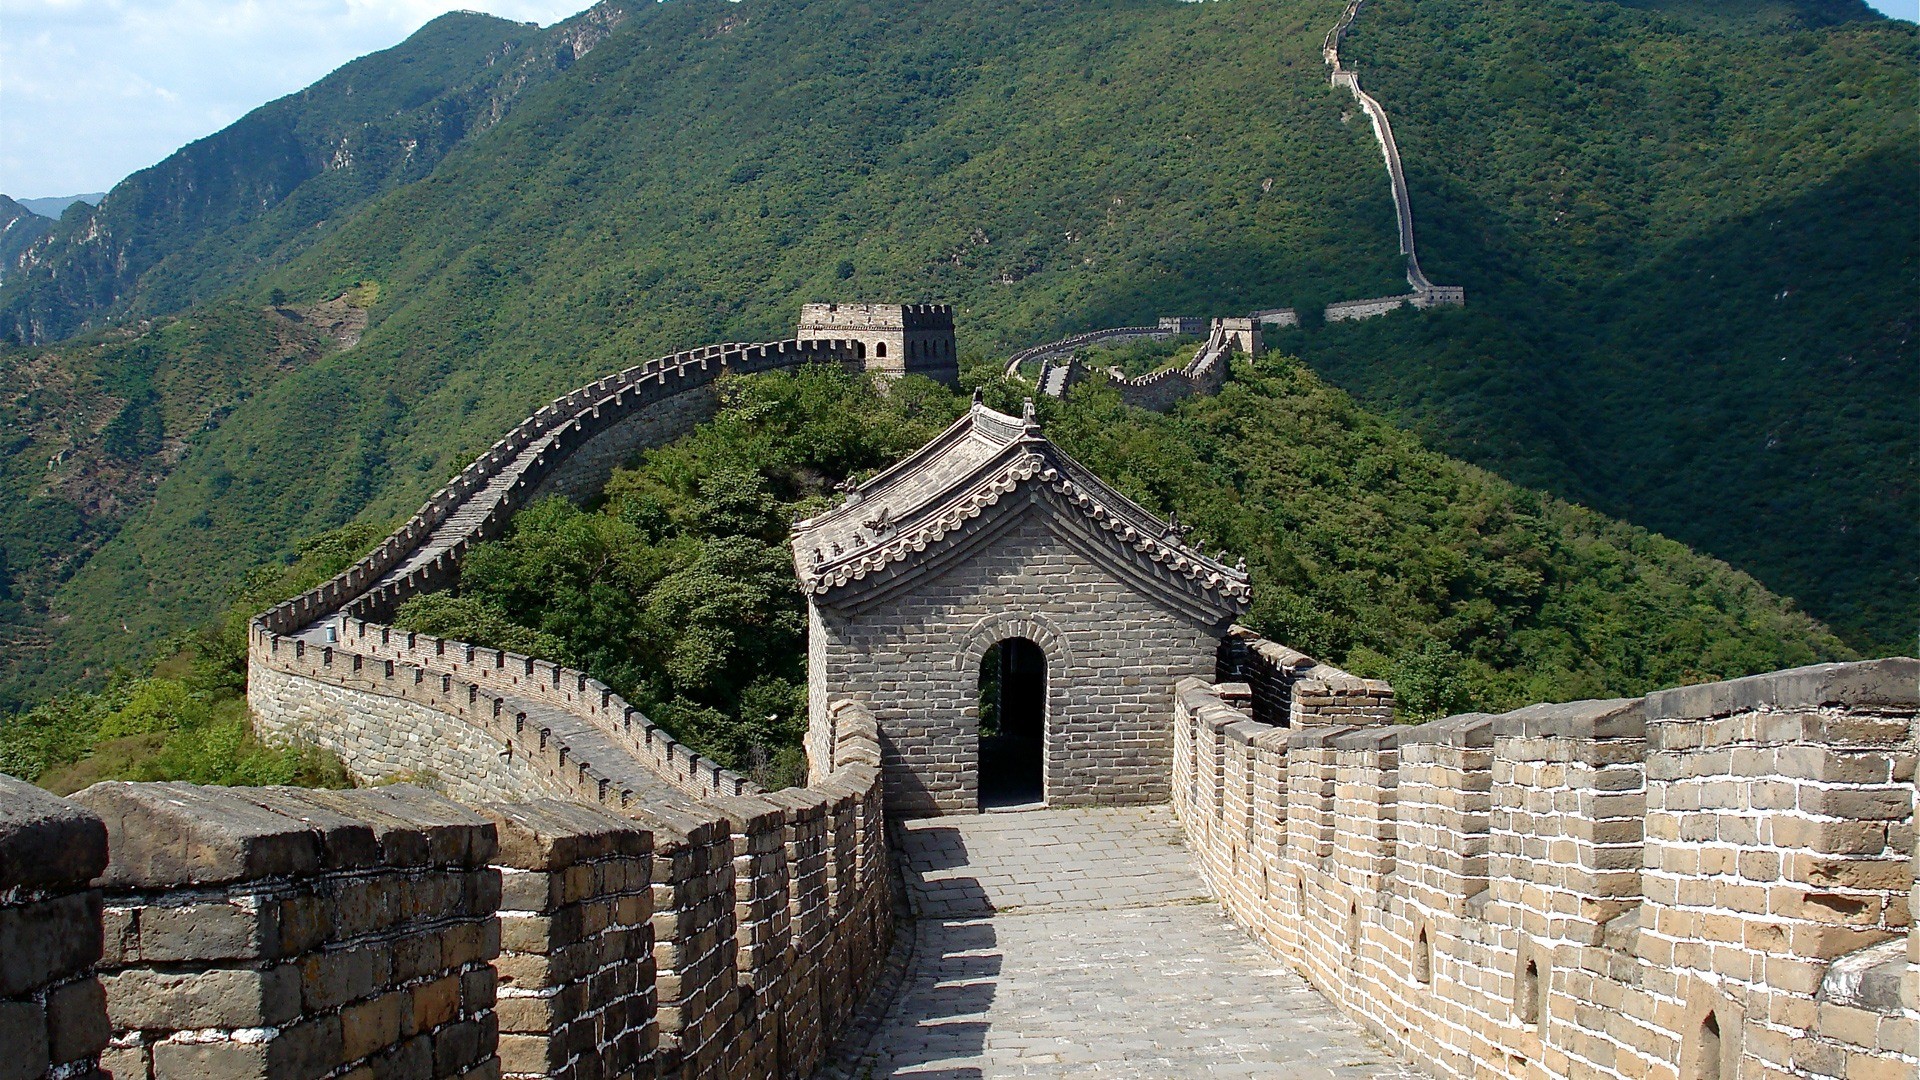 1920x1080 Great Wall of China Wallpaper China World Wallpapers